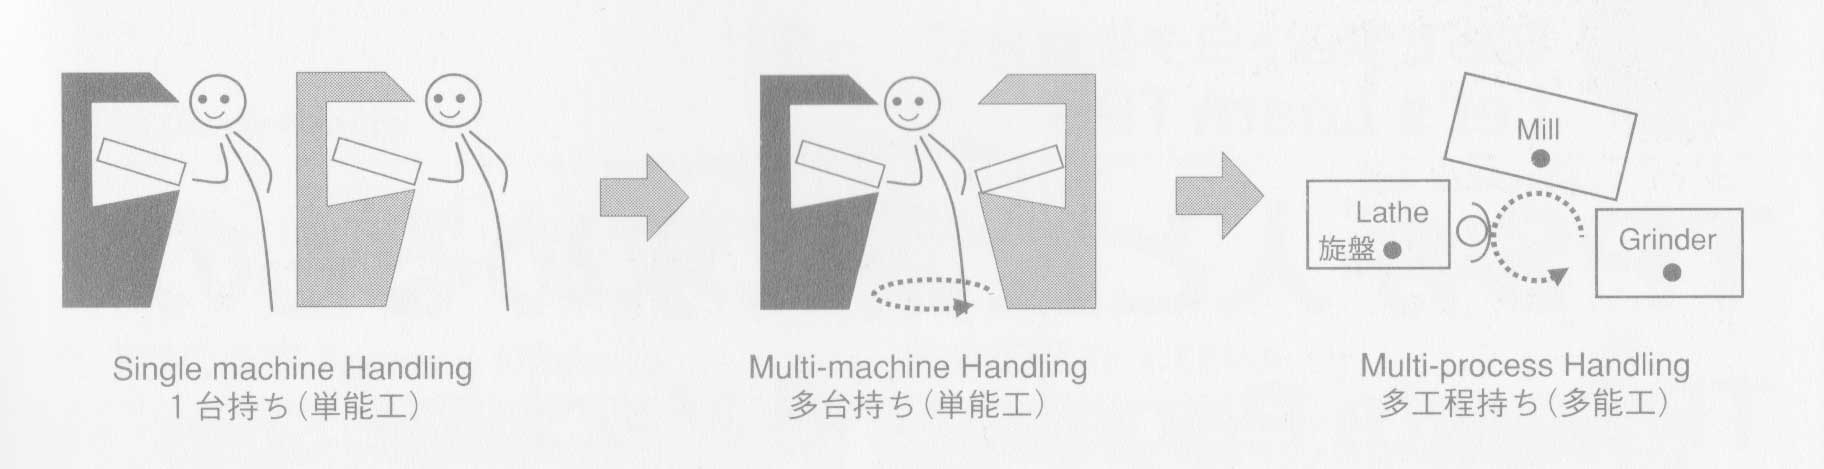 multi-machine-Handling